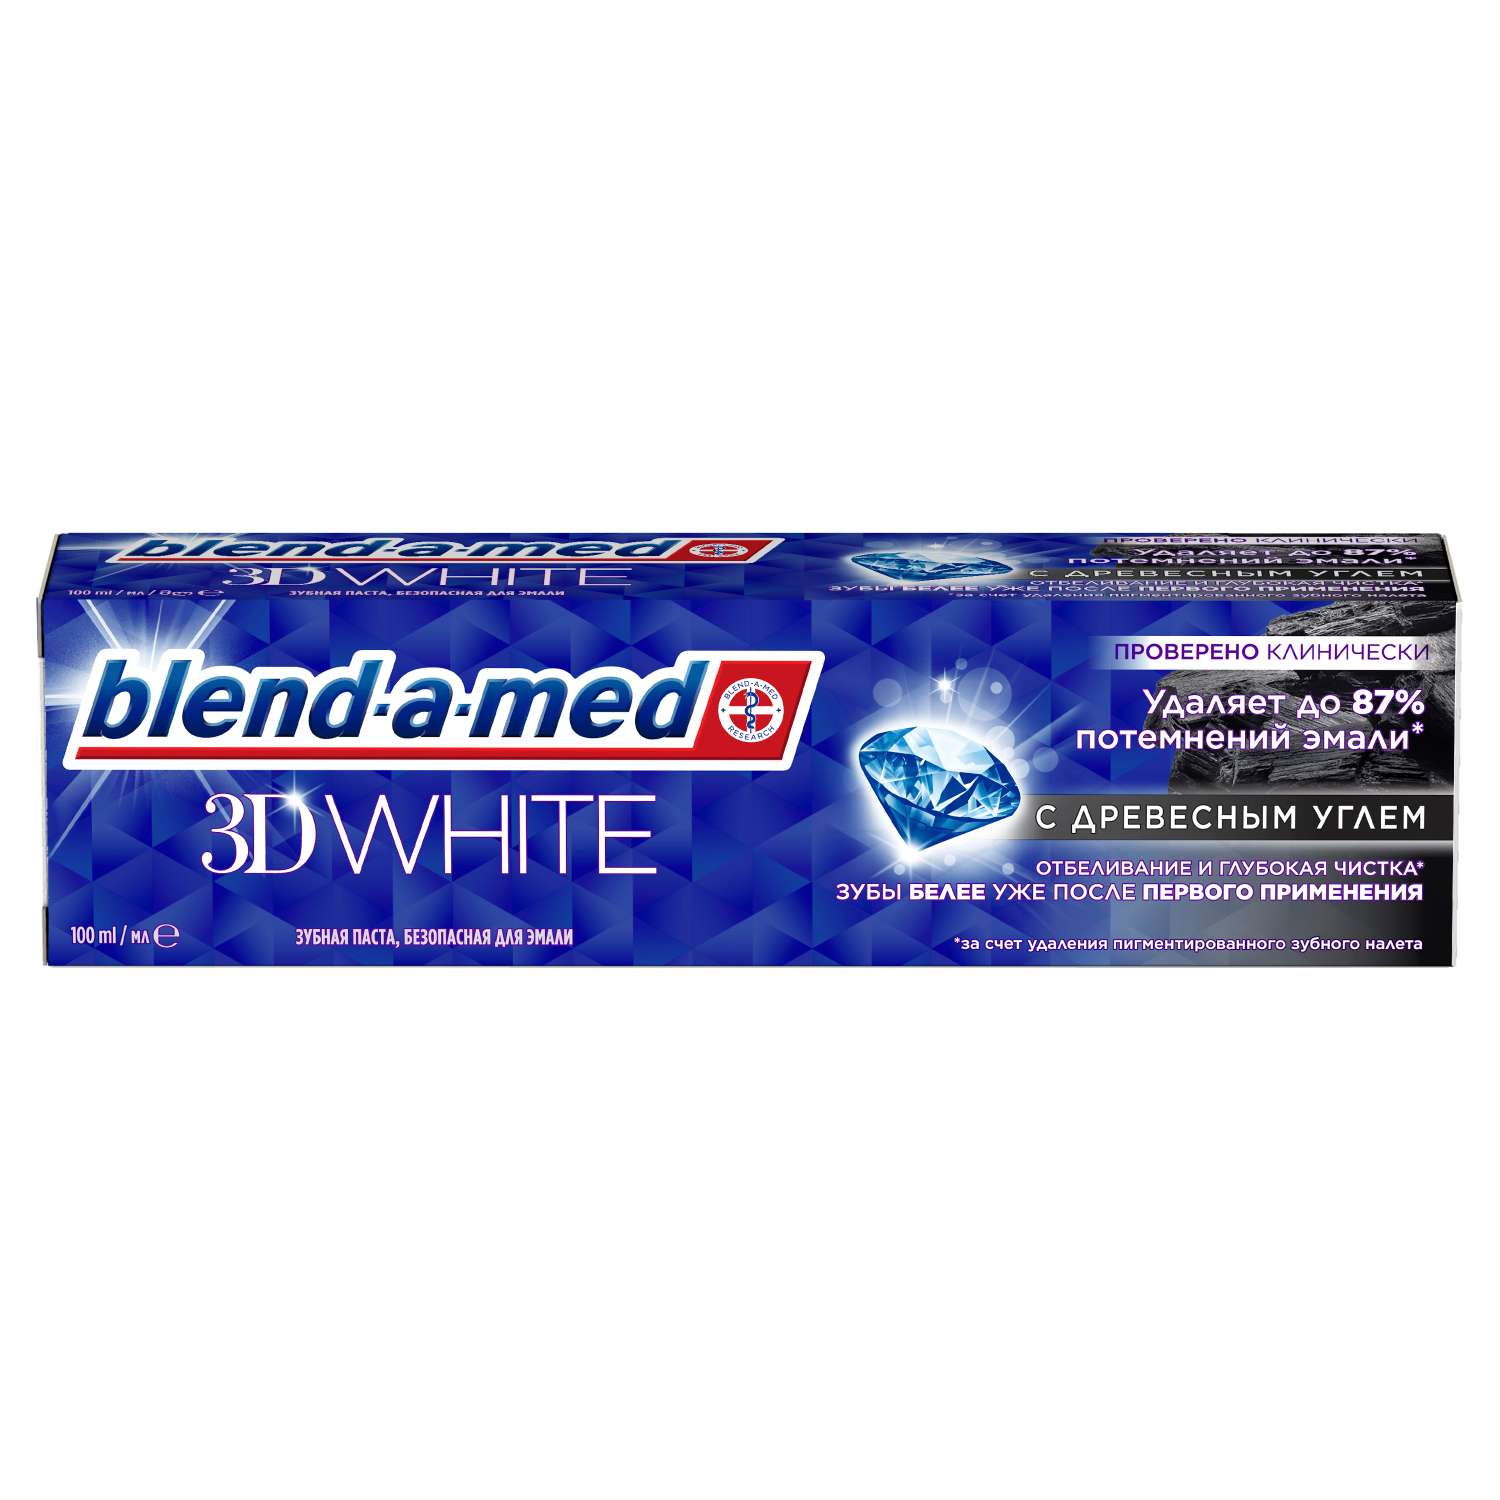 Зубная паста Blend-a-med 3D White Отбеливание и глубокая чистка с древесным углем 100мл - фото 1